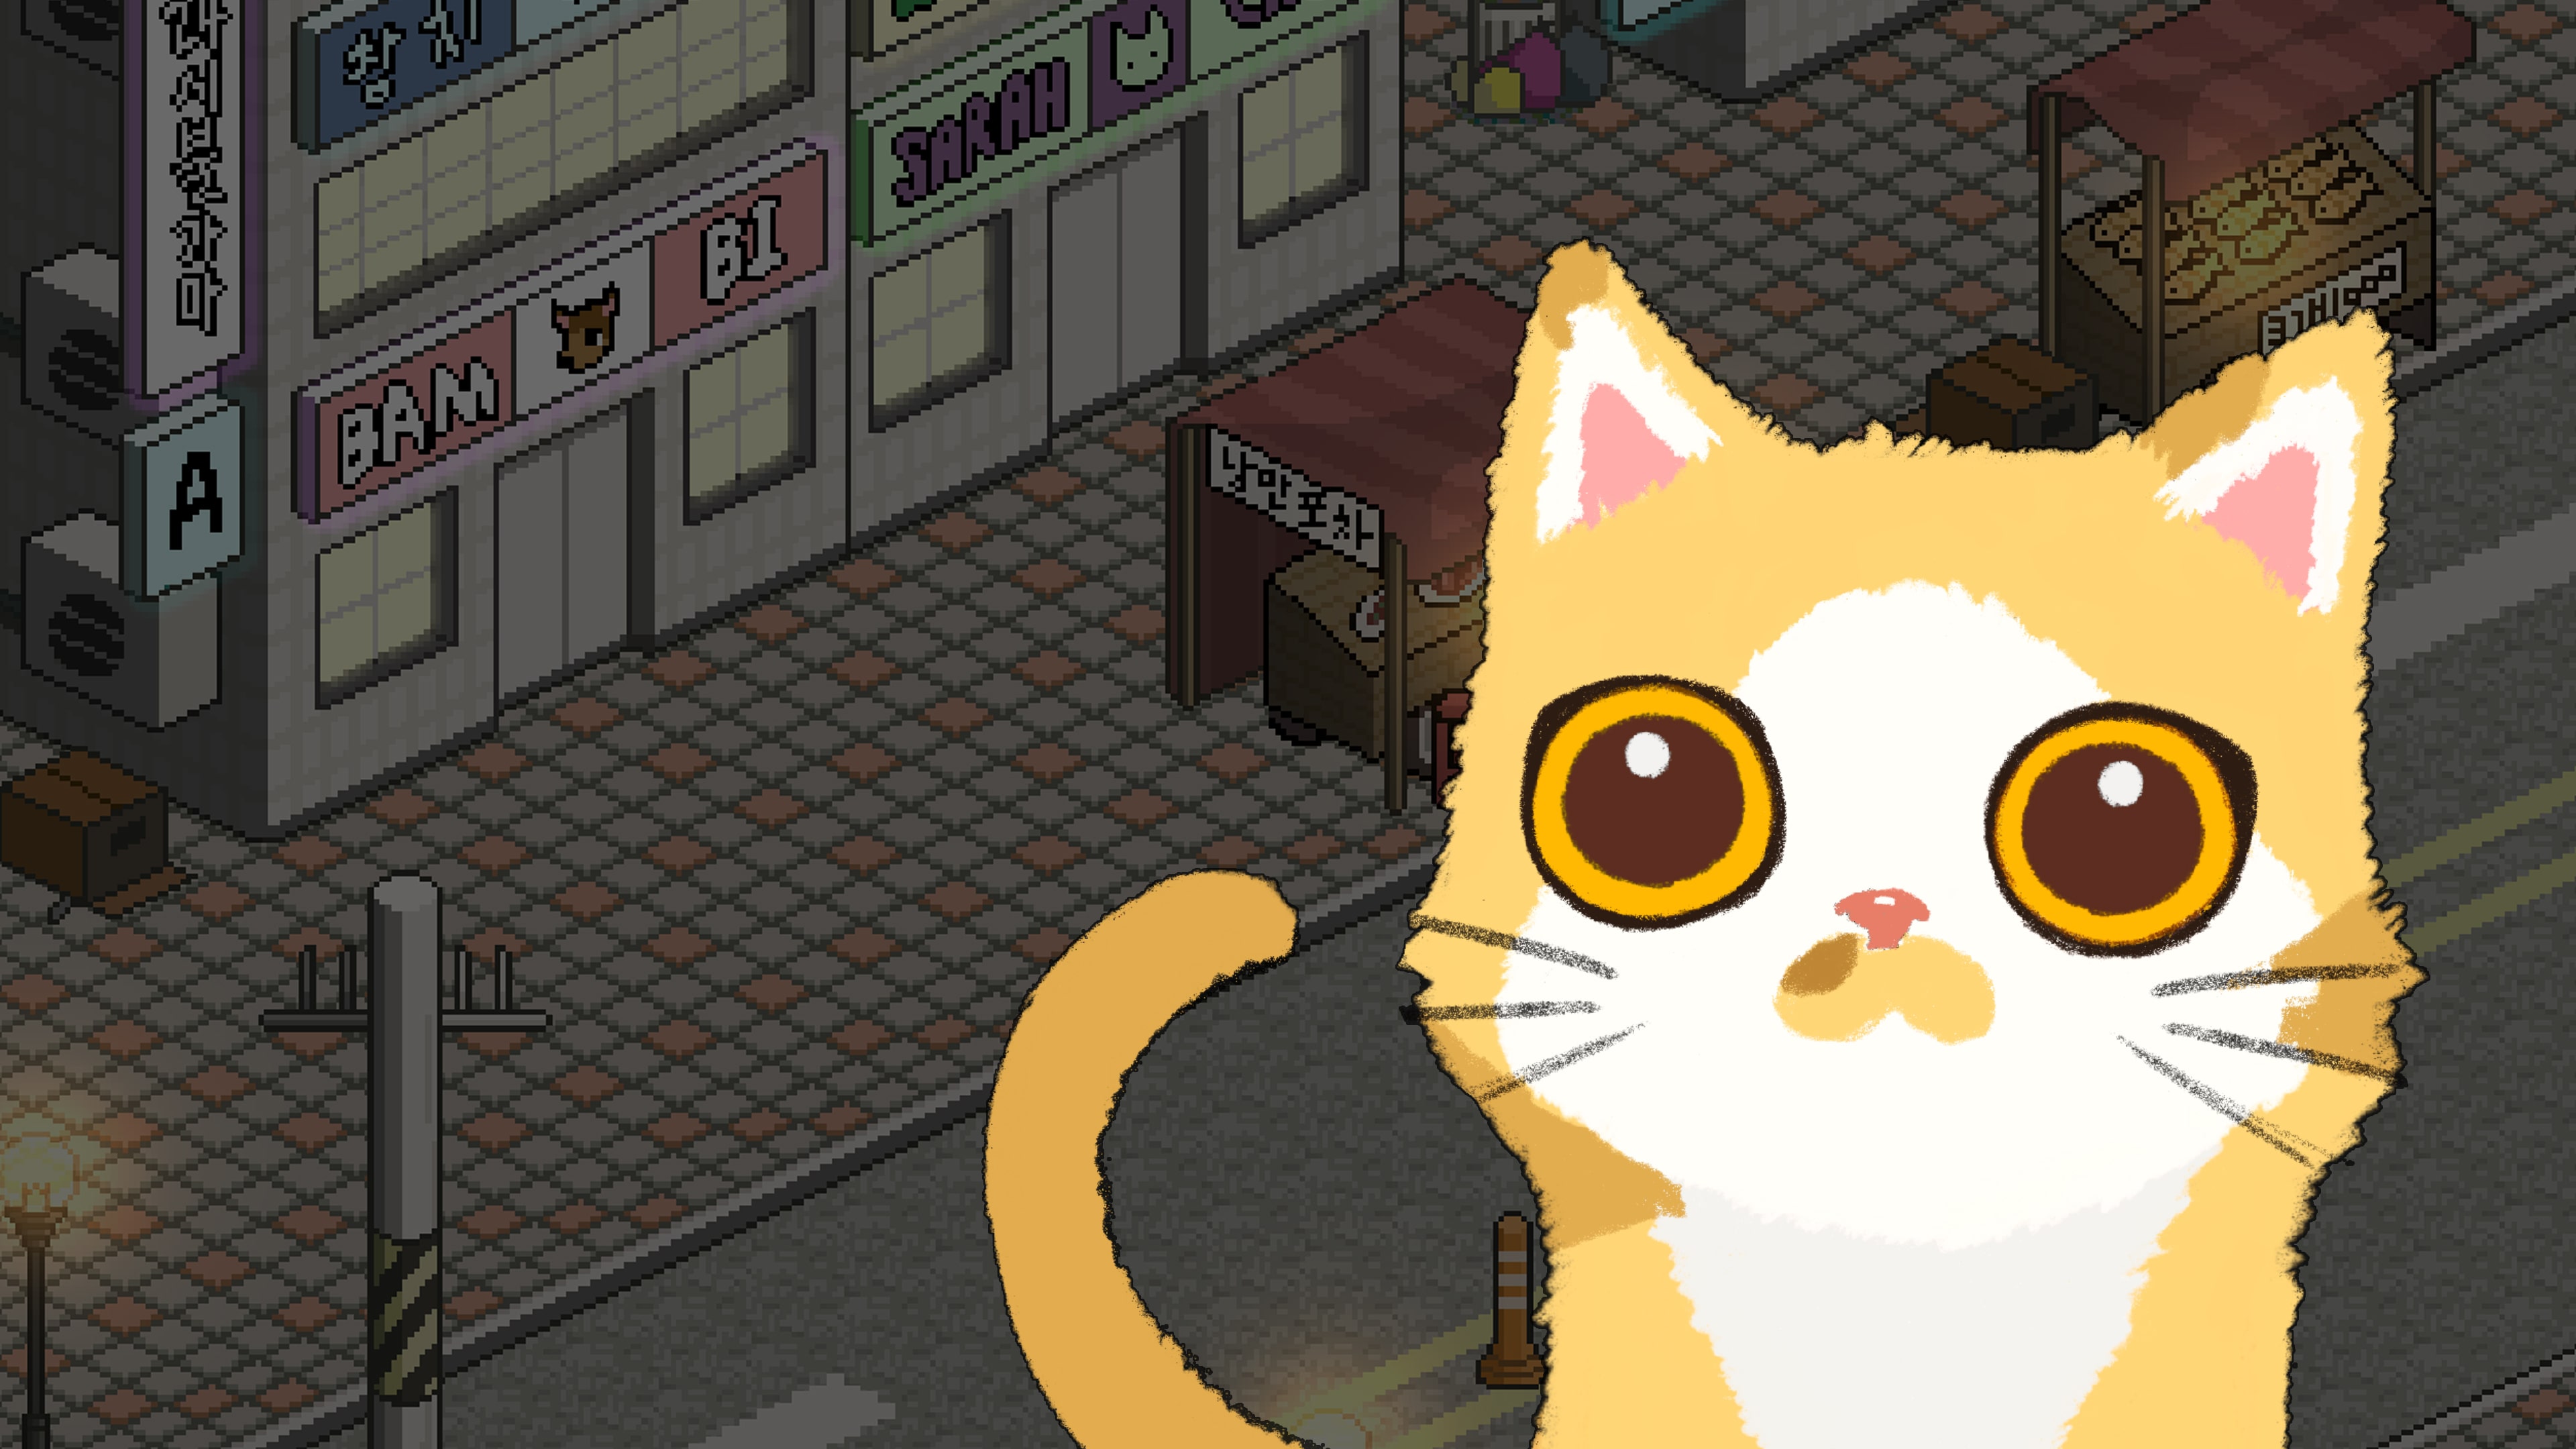 A Street Cat's Tale (O conto de um gato de rua)